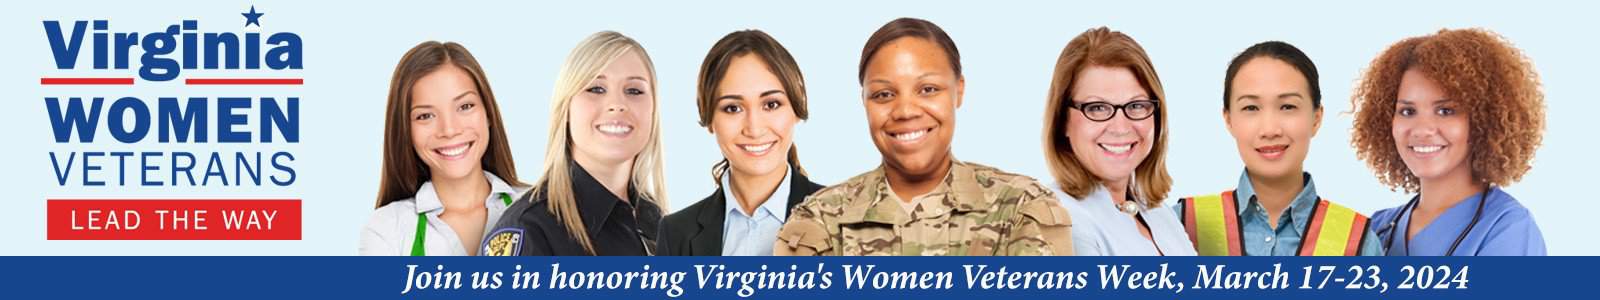 Week set aside to honor women veterans